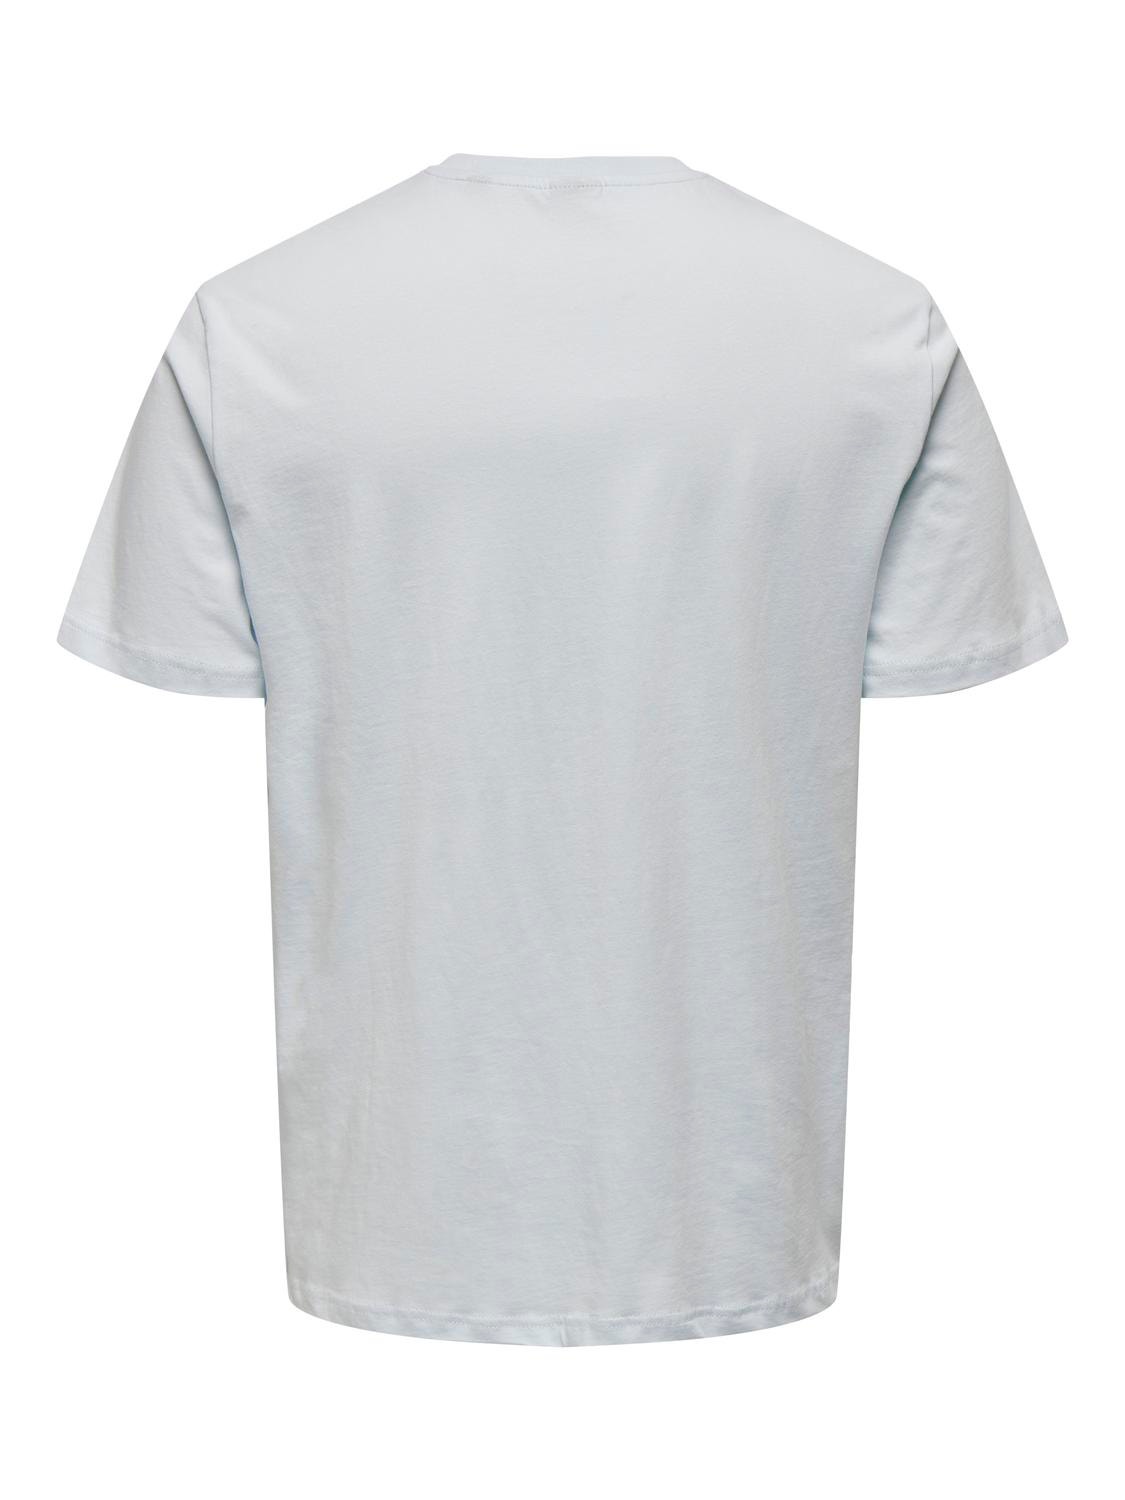 ONLY & SONS Camisetas Corte regular Cuello redondo -Plein Air - 22026084